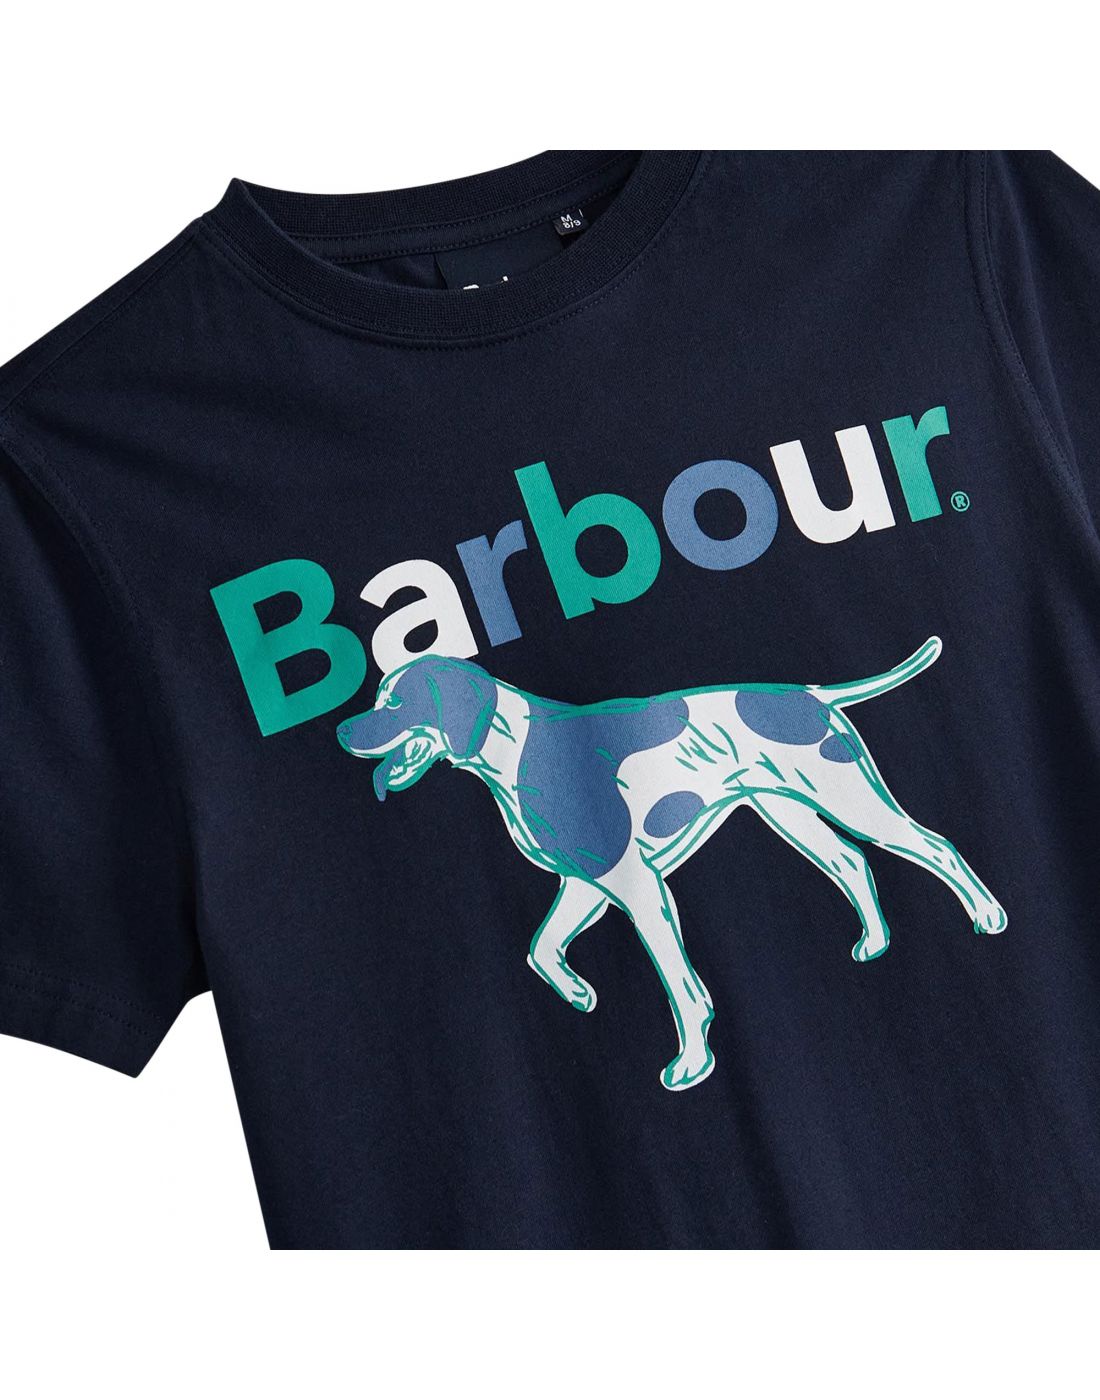 Παιδικό T-shirt Barbour